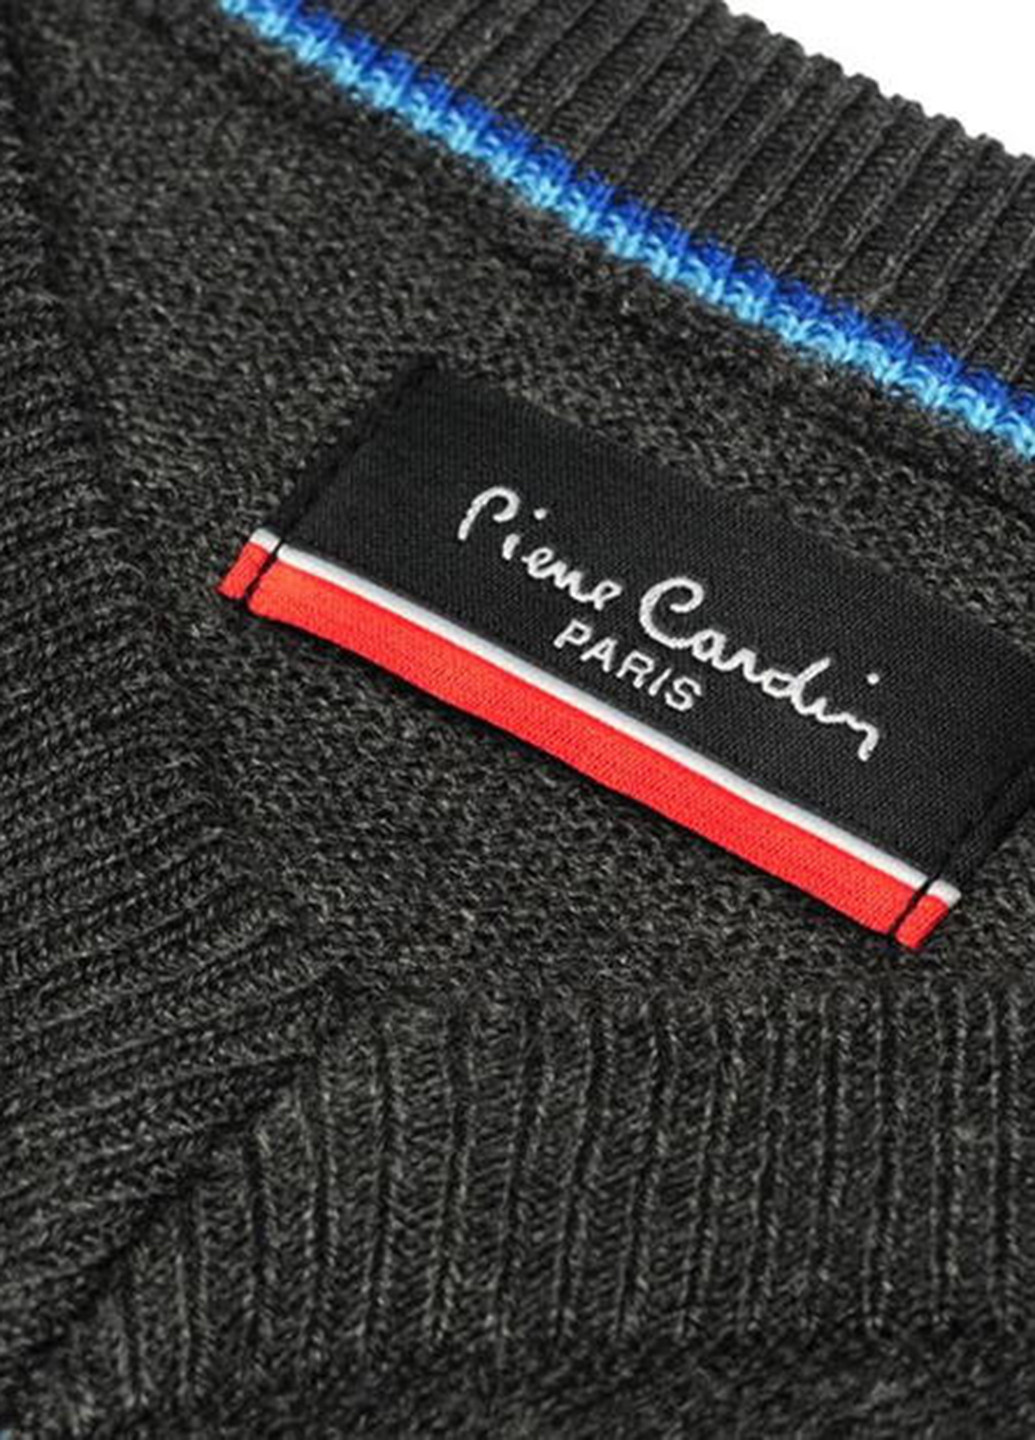 Графитовый демисезонный пуловер пуловер Pierre Cardin